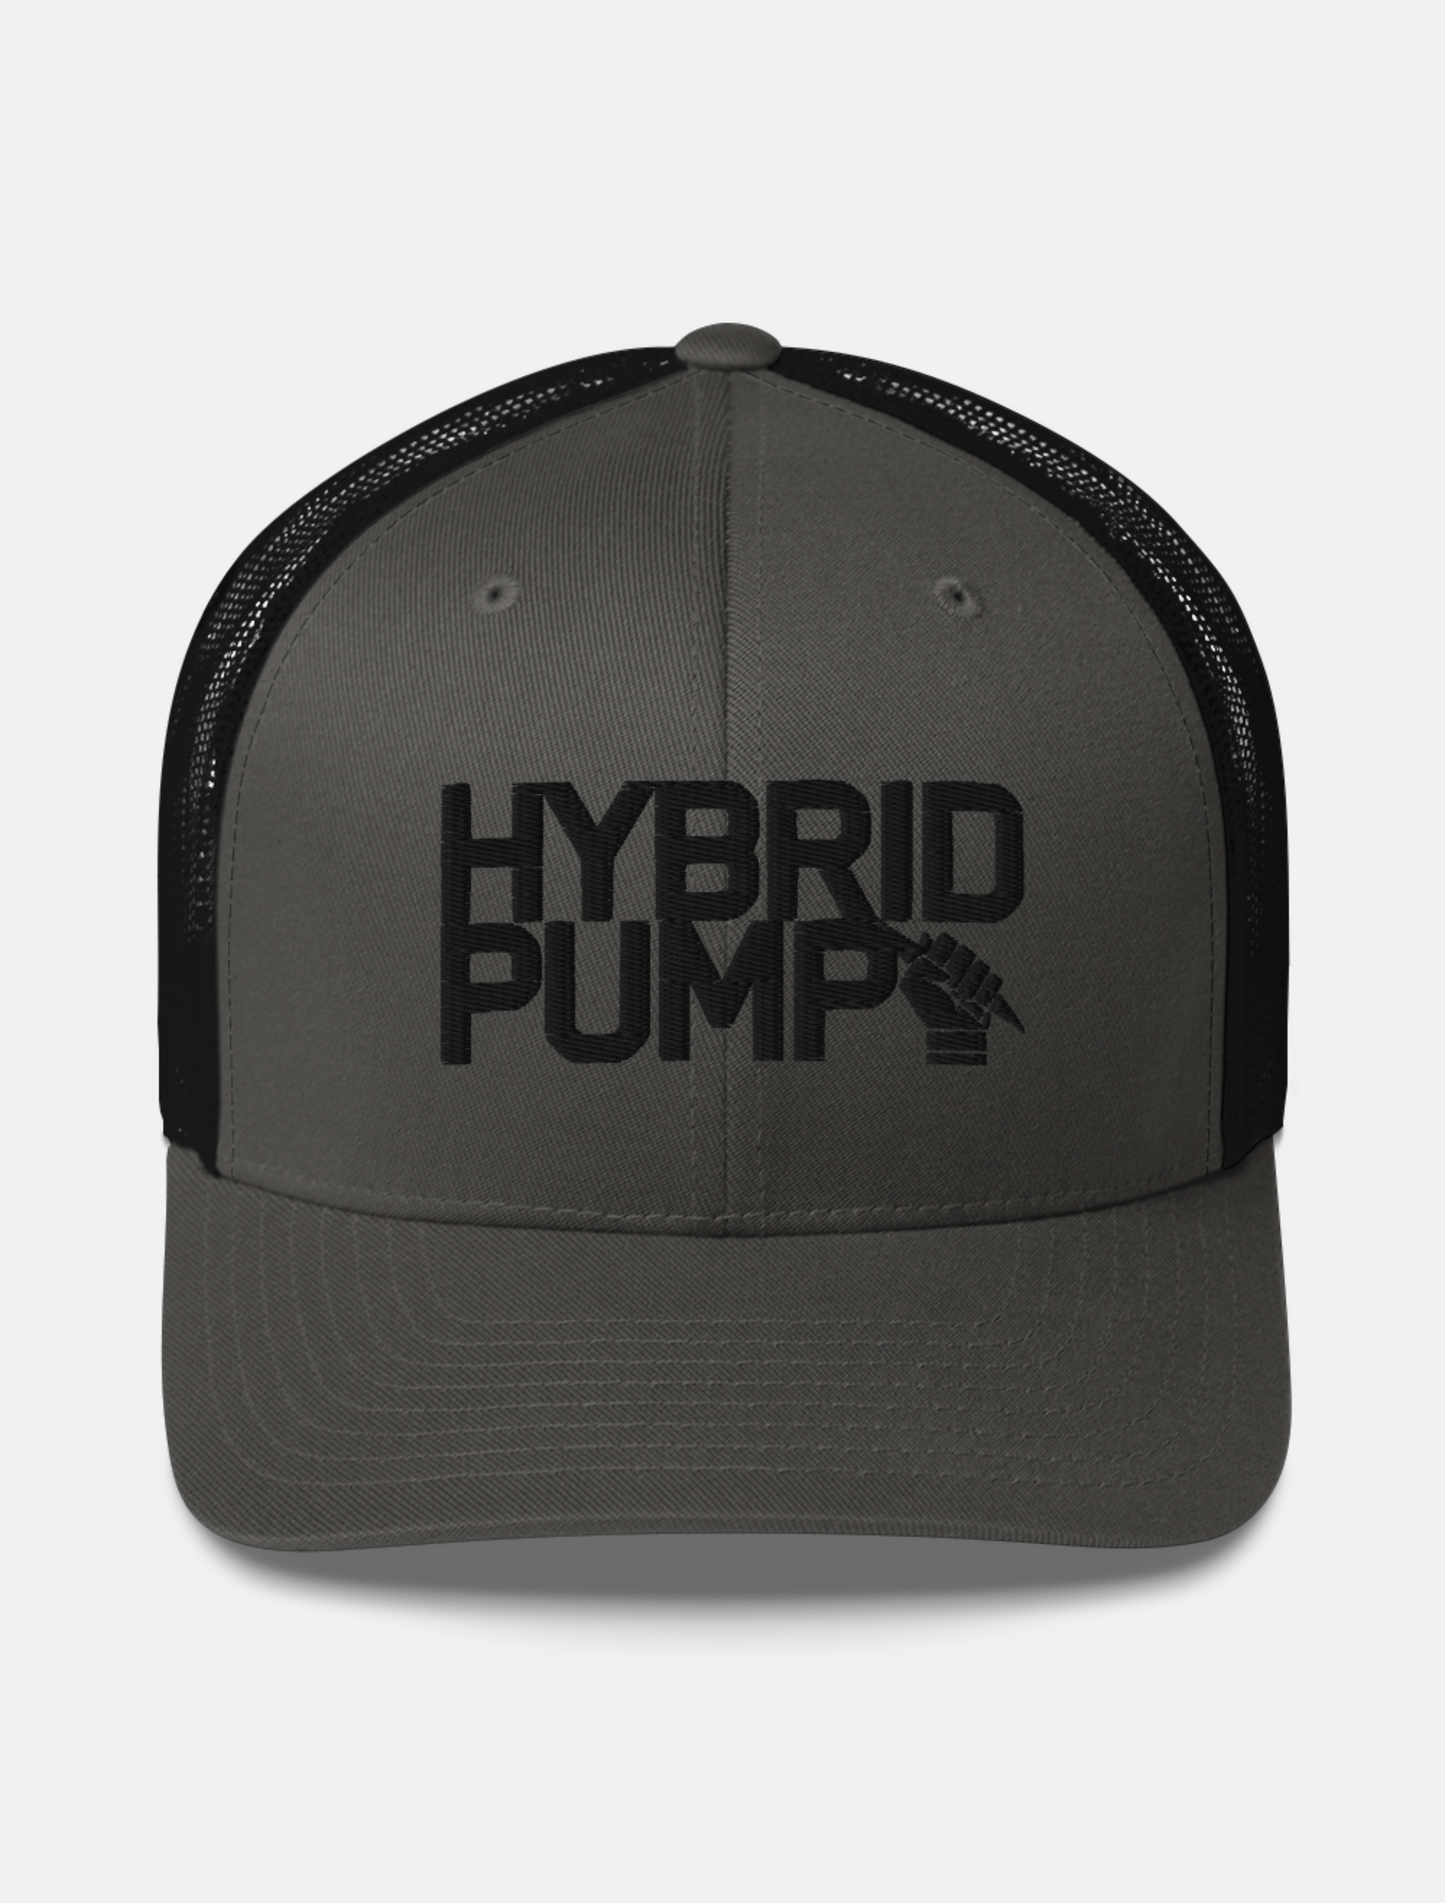 HYBRID PUMP TRUCKER HAT